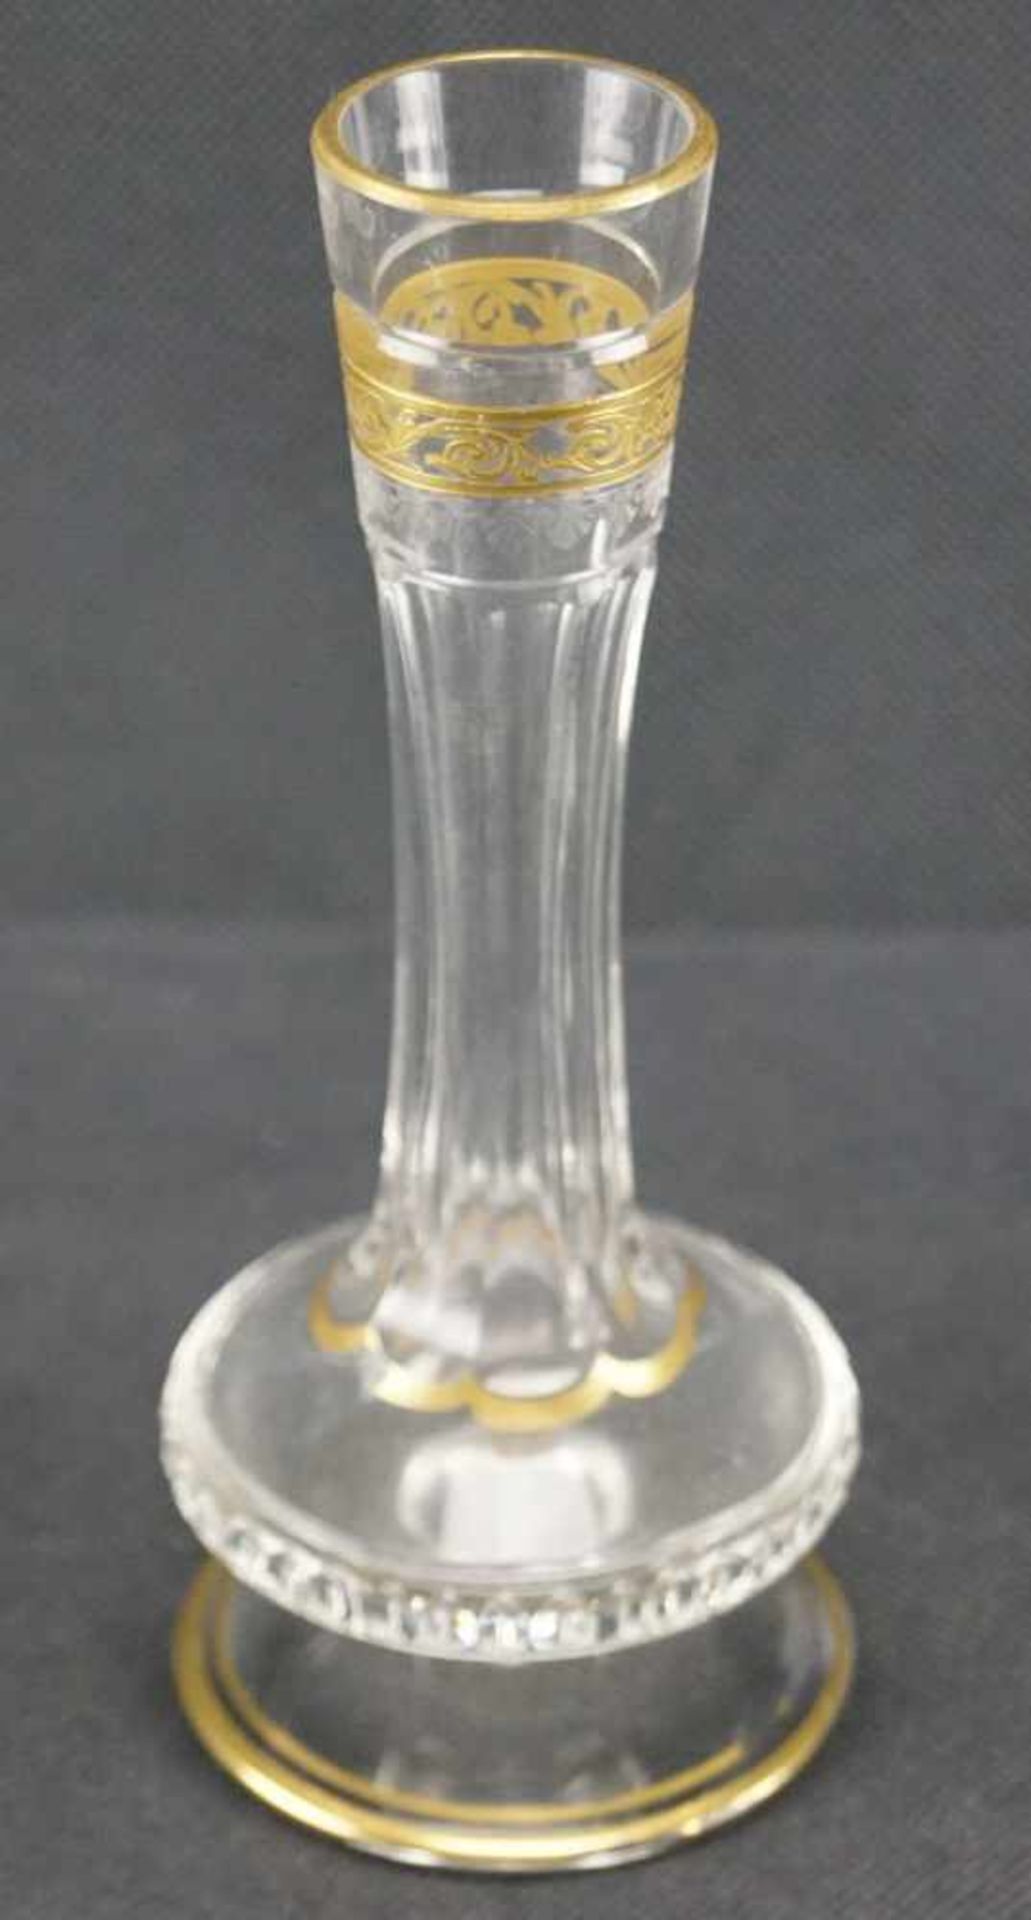 Vase, Saint LouisMit Ätzmarke versehen, Serie Thistle Gold, Höhe 17,5 cm, Gold berieben, eine